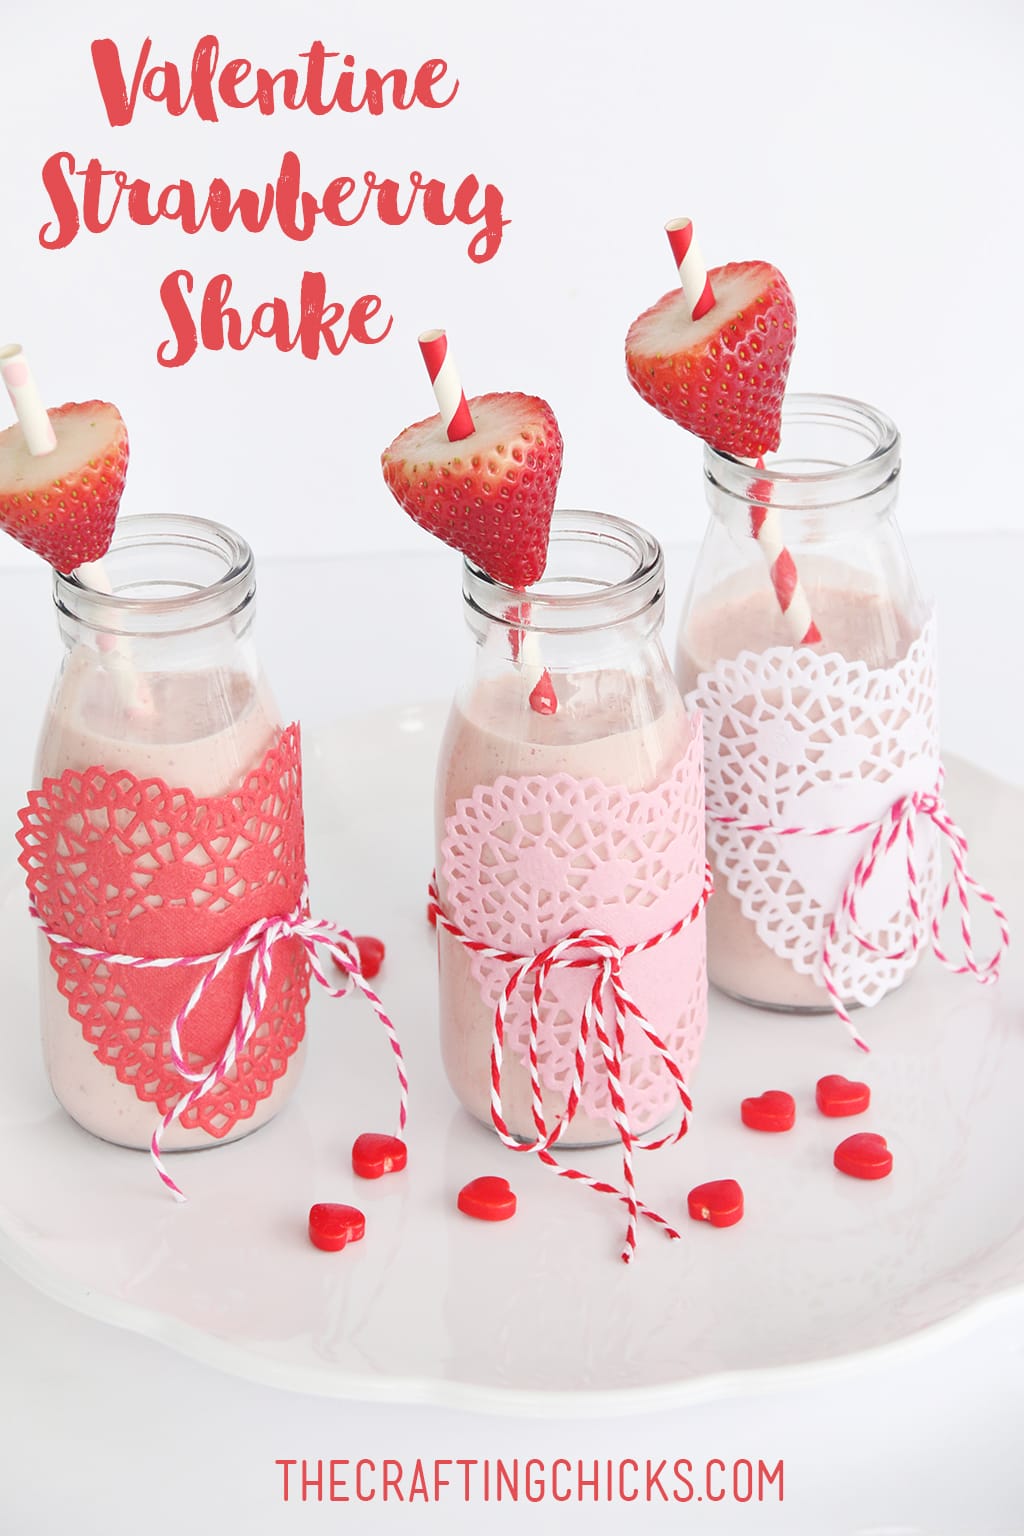 Valentine Strawberry Milk shakes on a white tray